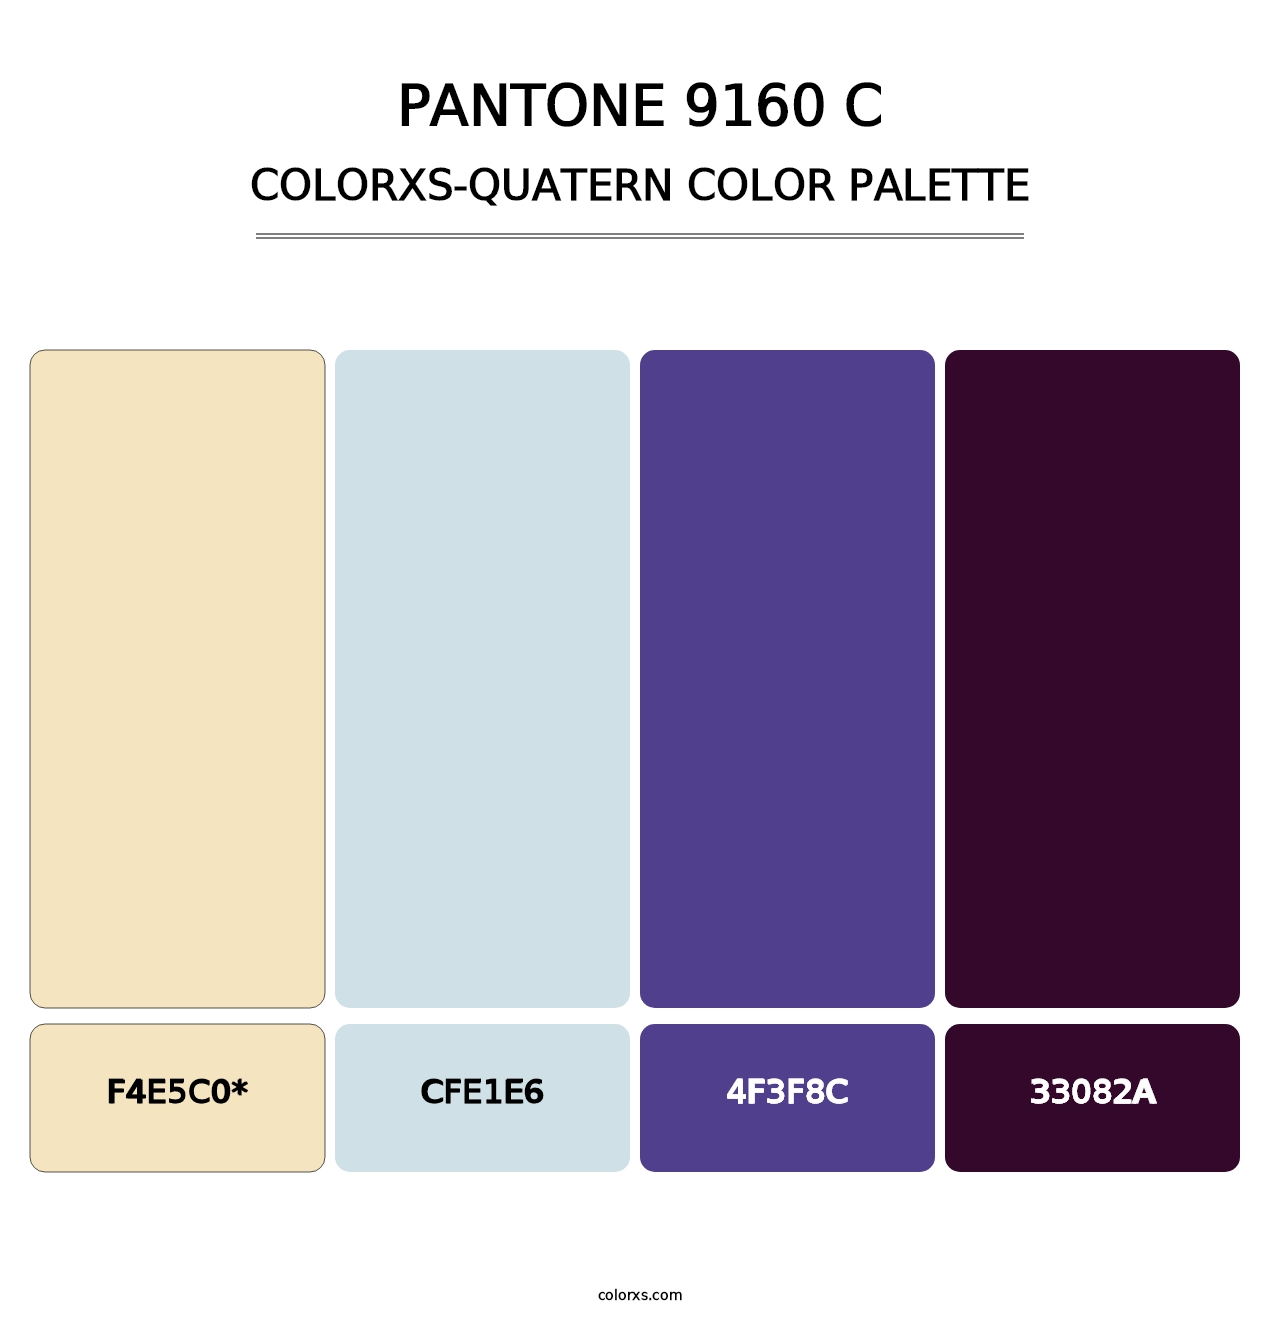 PANTONE 9160 C - Colorxs Quatern Palette